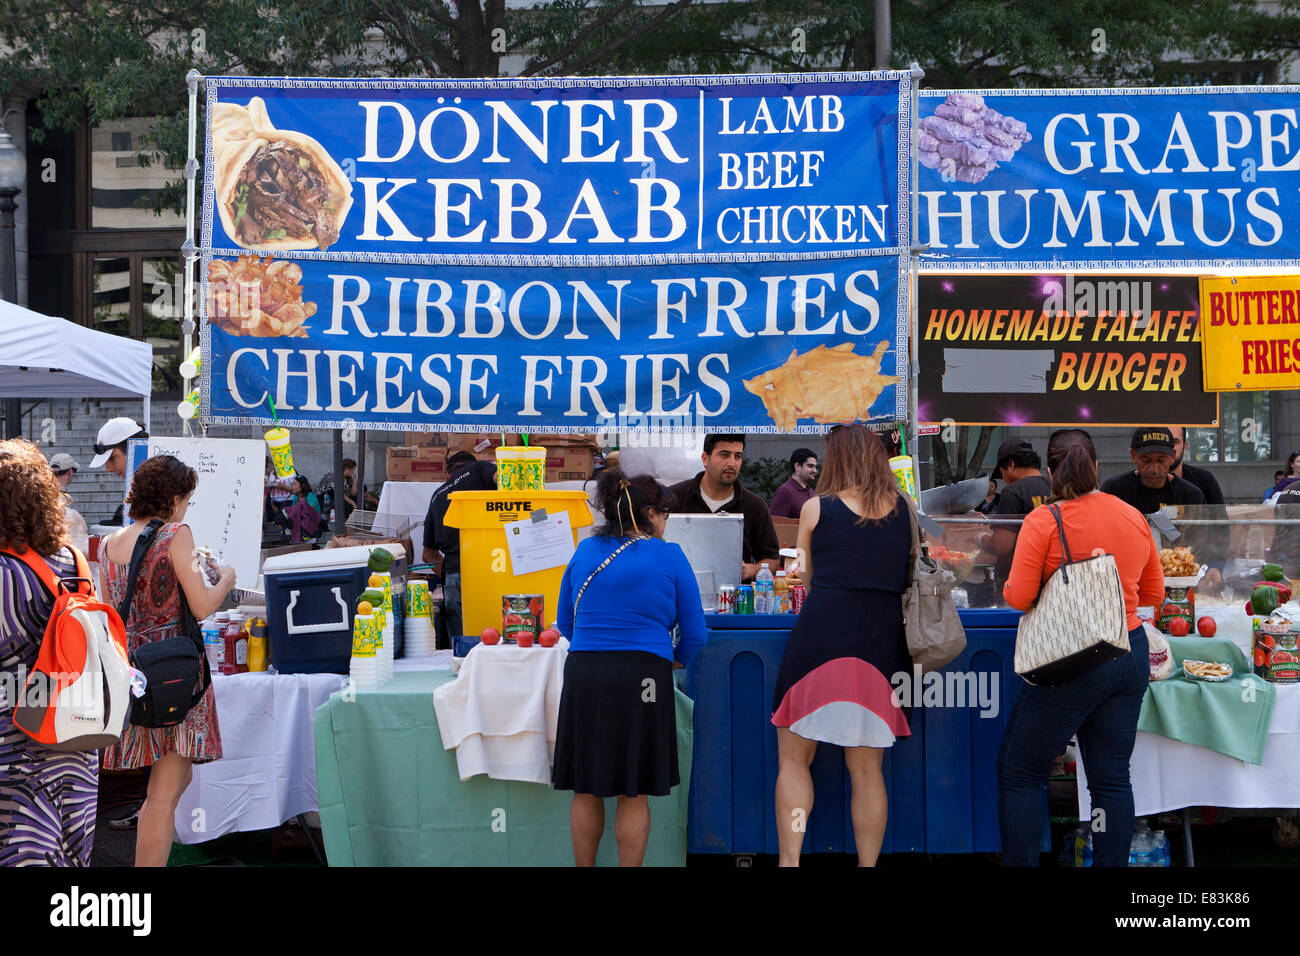 Doner kebab puesto de comida en el festival al aire libre - EE.UU. Foto de stock